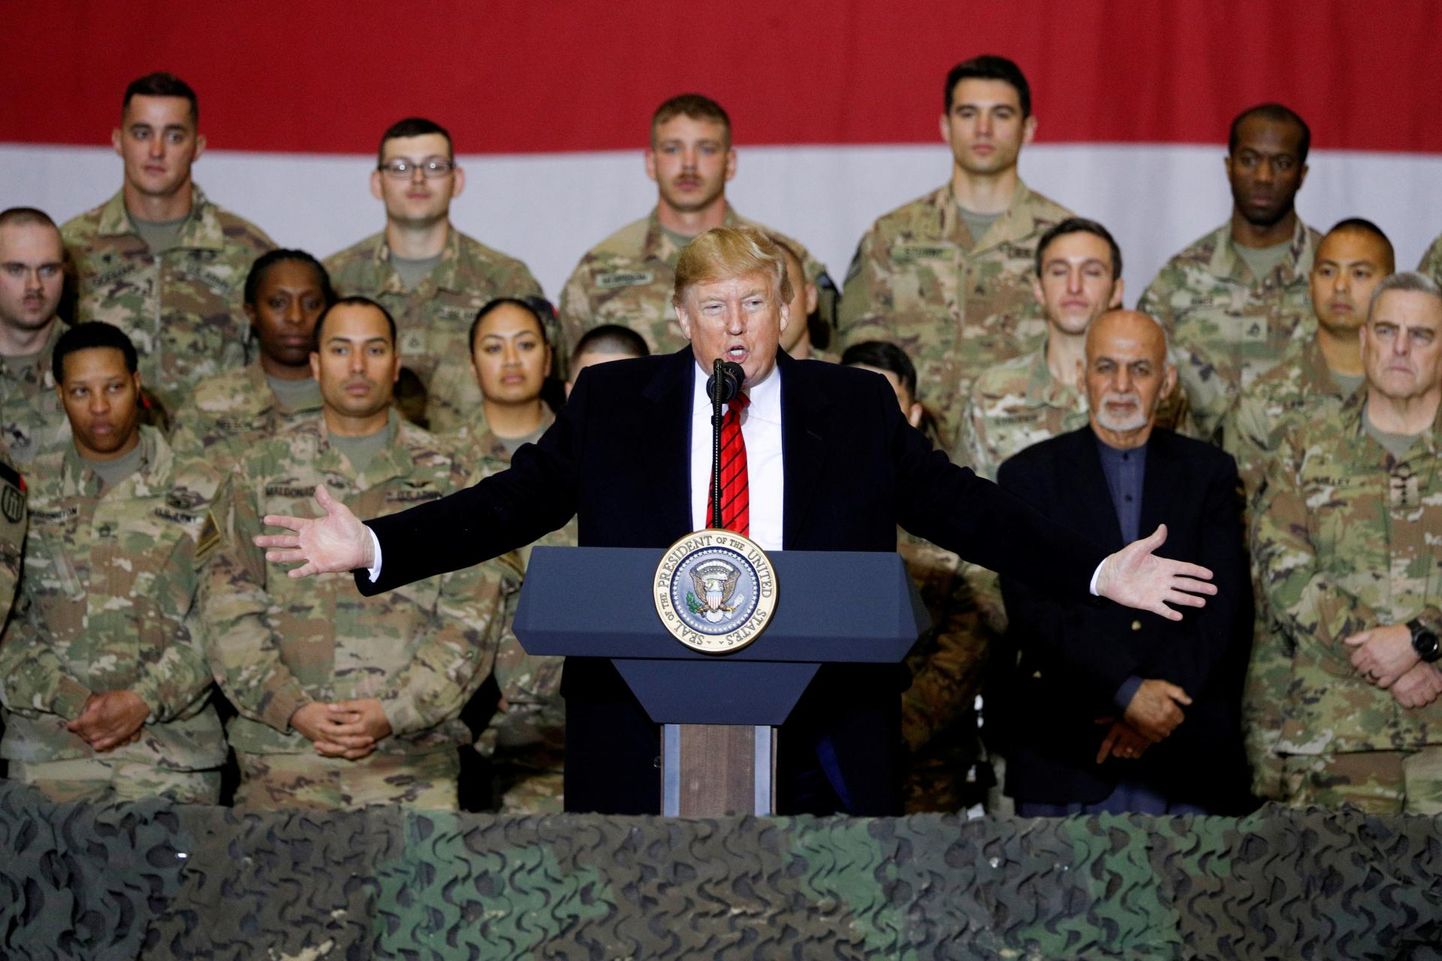 Ameerika Ühendriikide president Donald Trump külastamas Afganistanis teenivaid USA sõdureid. Osa allikate sõnul oli Venemaa sõlminud Talibaniga pearahaleppe, millega Moskva lubas äärmusrühmitusele raha USA sõdurite ründamise eest.